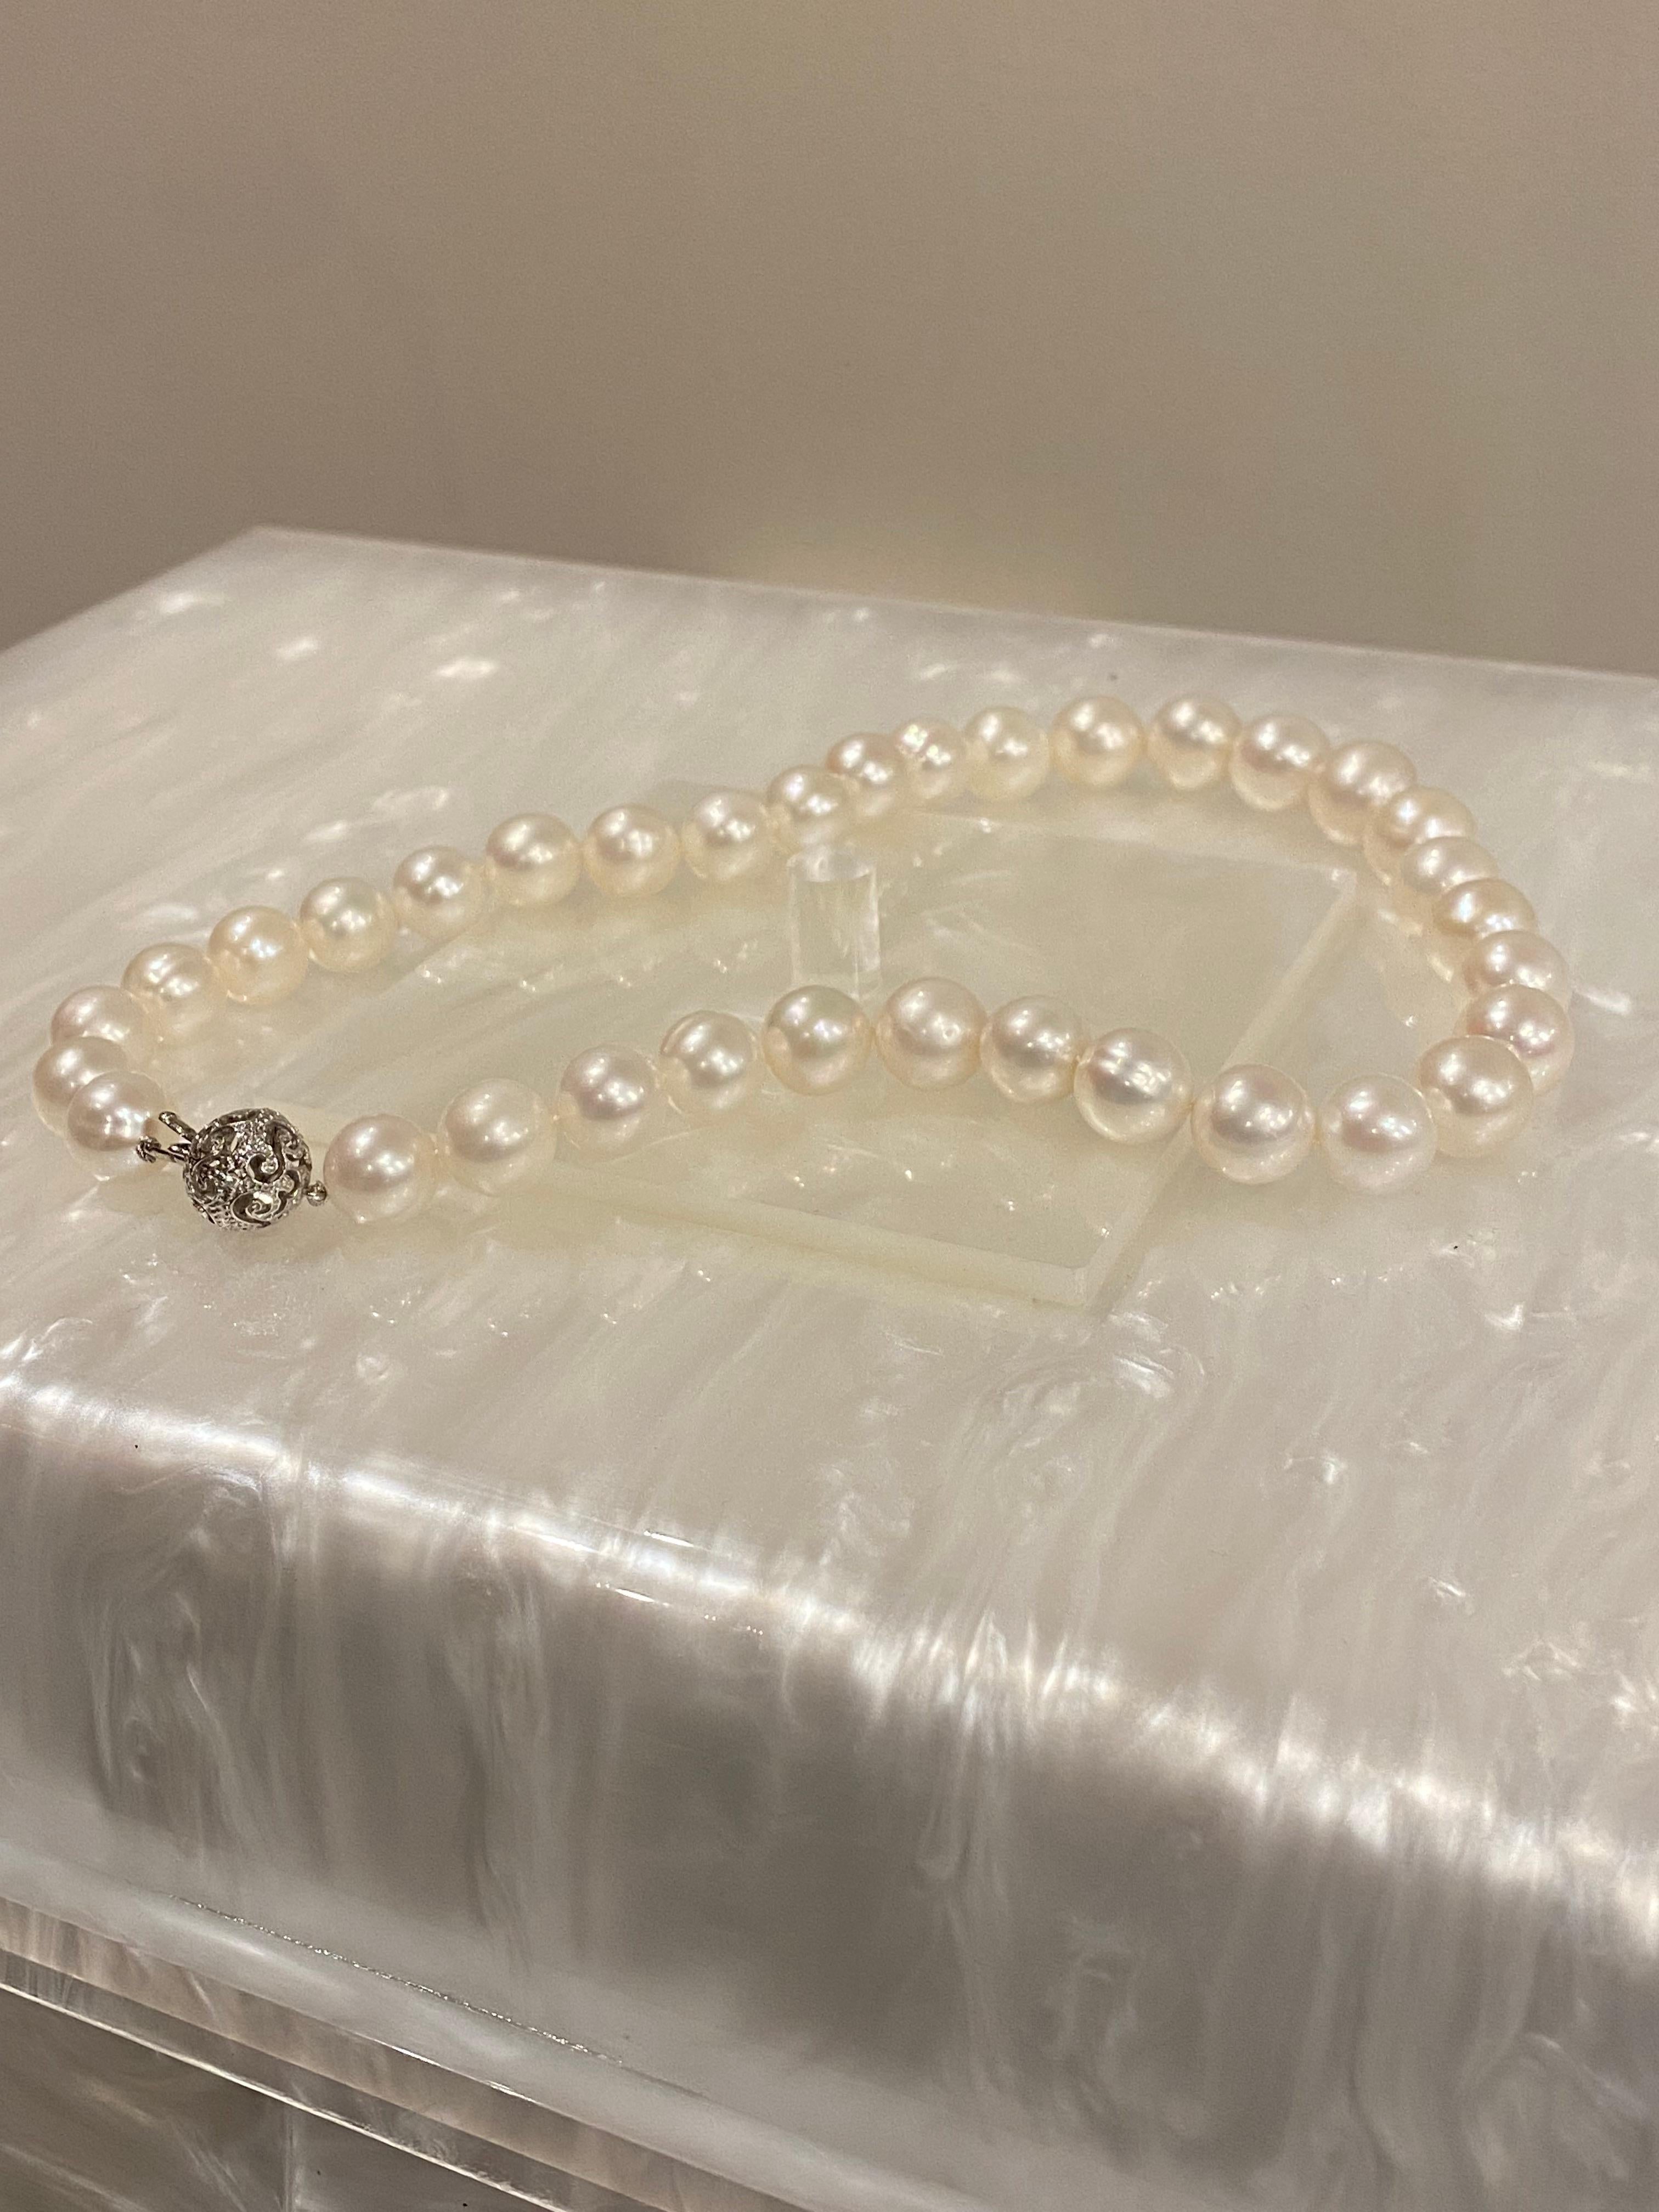 Un seul brin continu, 
comprenant 34 perles de culture de taille impressionnante, 
progressant de 11,2 mm à 13,8 mm 
d'un lustre fin comme un miroir et d'une étonnante teinte crème / ivoire crayeuse rayonnante

chacun étant noué individuellement à